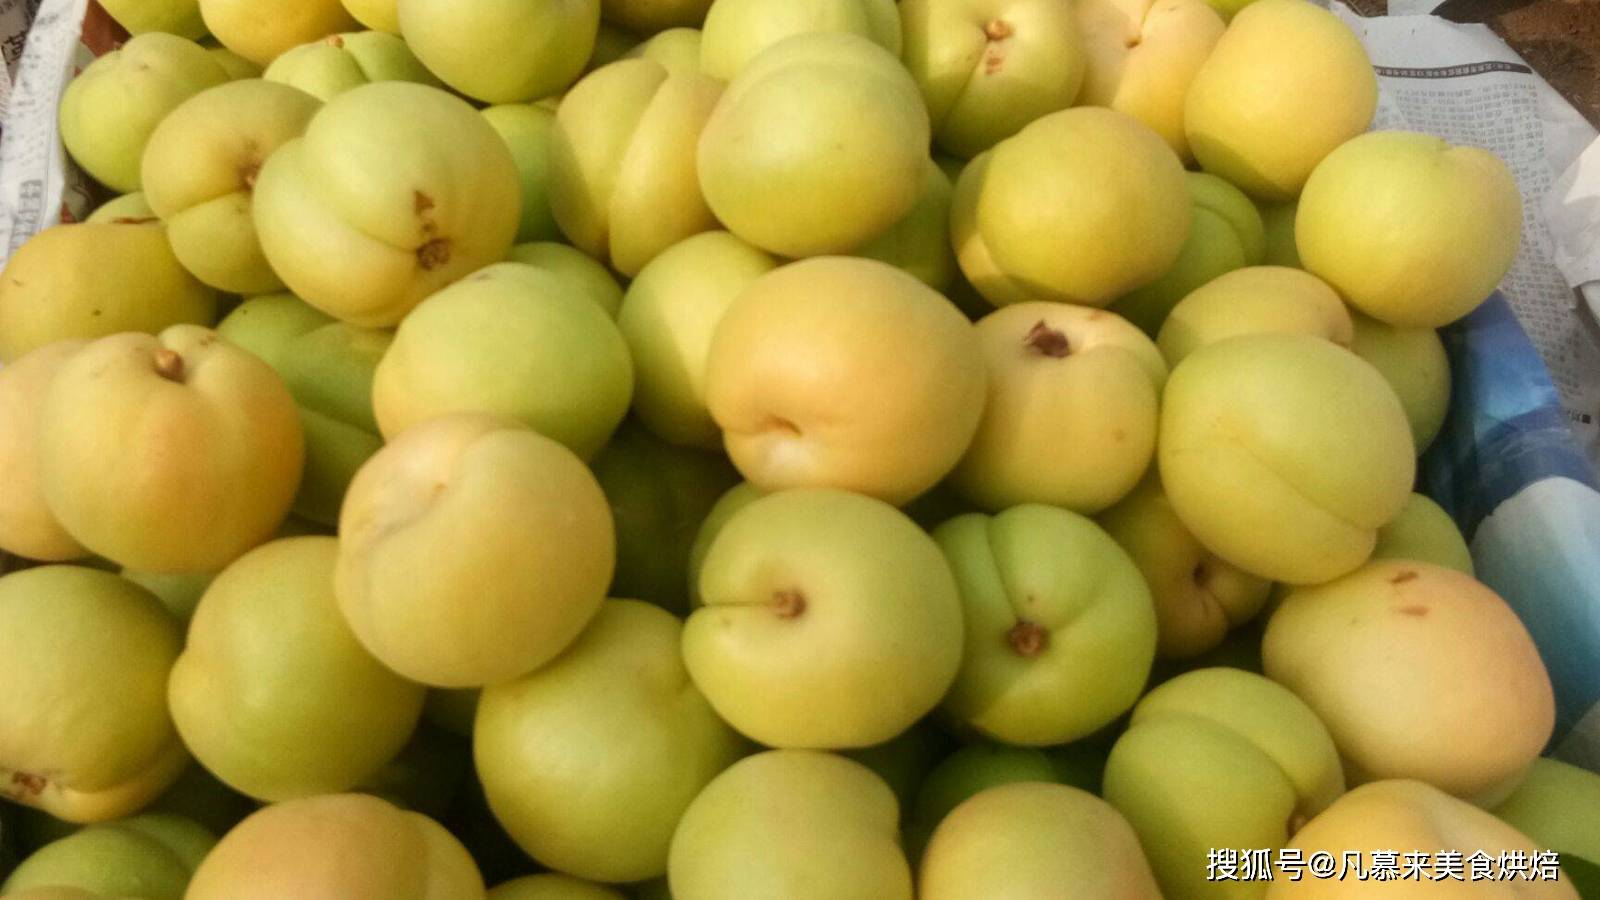 香白杏,又名银白杏,是著名的鲜食杏品种,产于河北省丰润,遵化和天津市